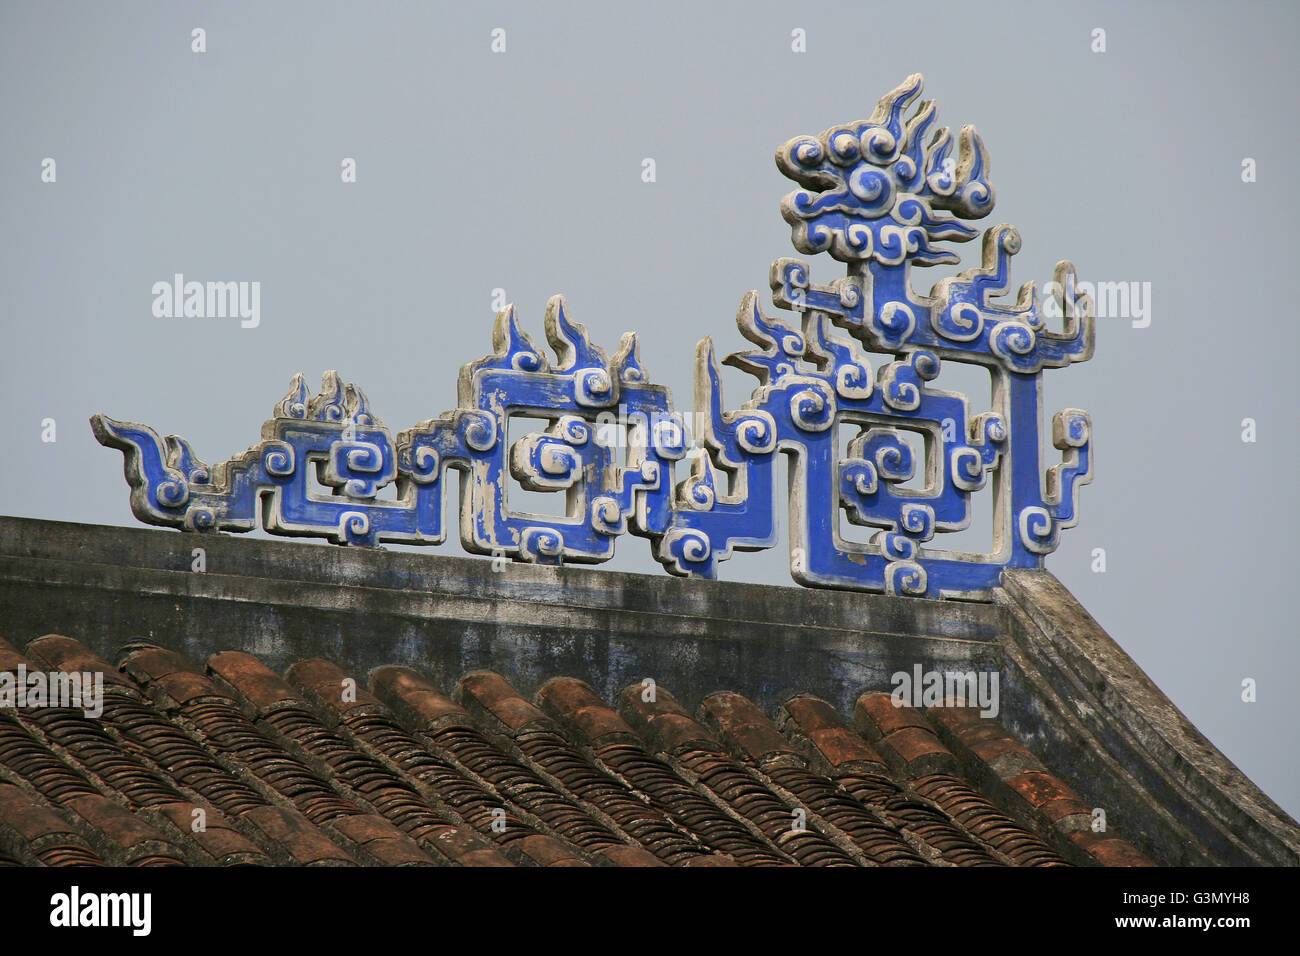 Eine geschnitzte Drachen auf dem Dach des buddhistischen Tempels in Hoi an (Vietnam). Stockfoto